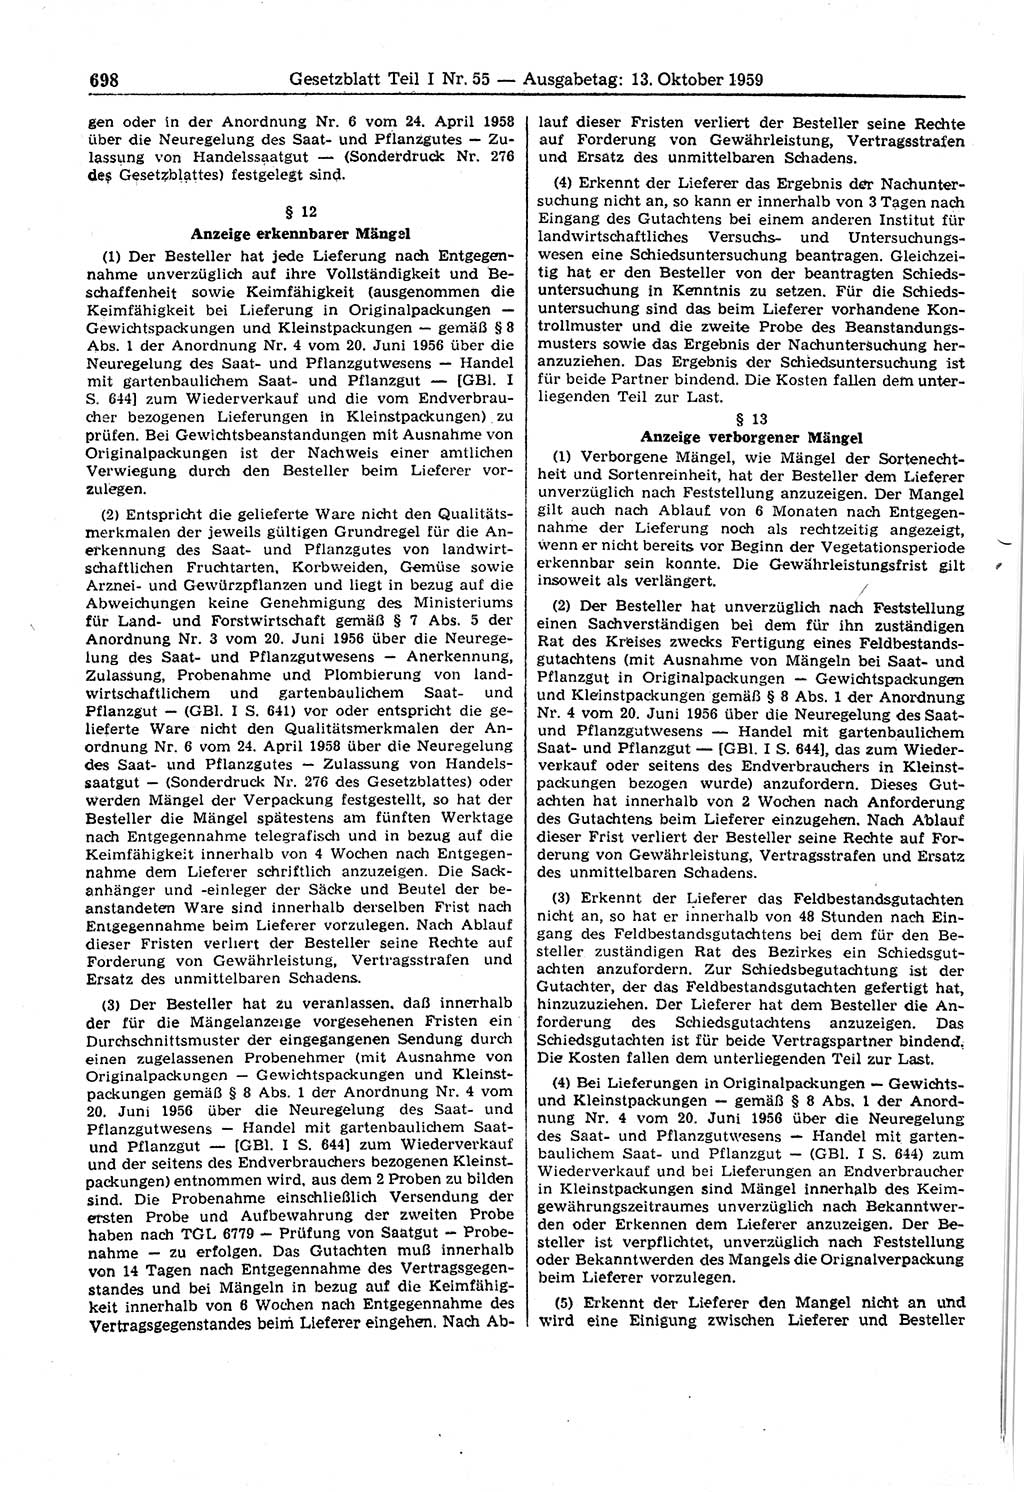 Gesetzblatt (GBl.) der Deutschen Demokratischen Republik (DDR) Teil Ⅰ 1959, Seite 698 (GBl. DDR Ⅰ 1959, S. 698)